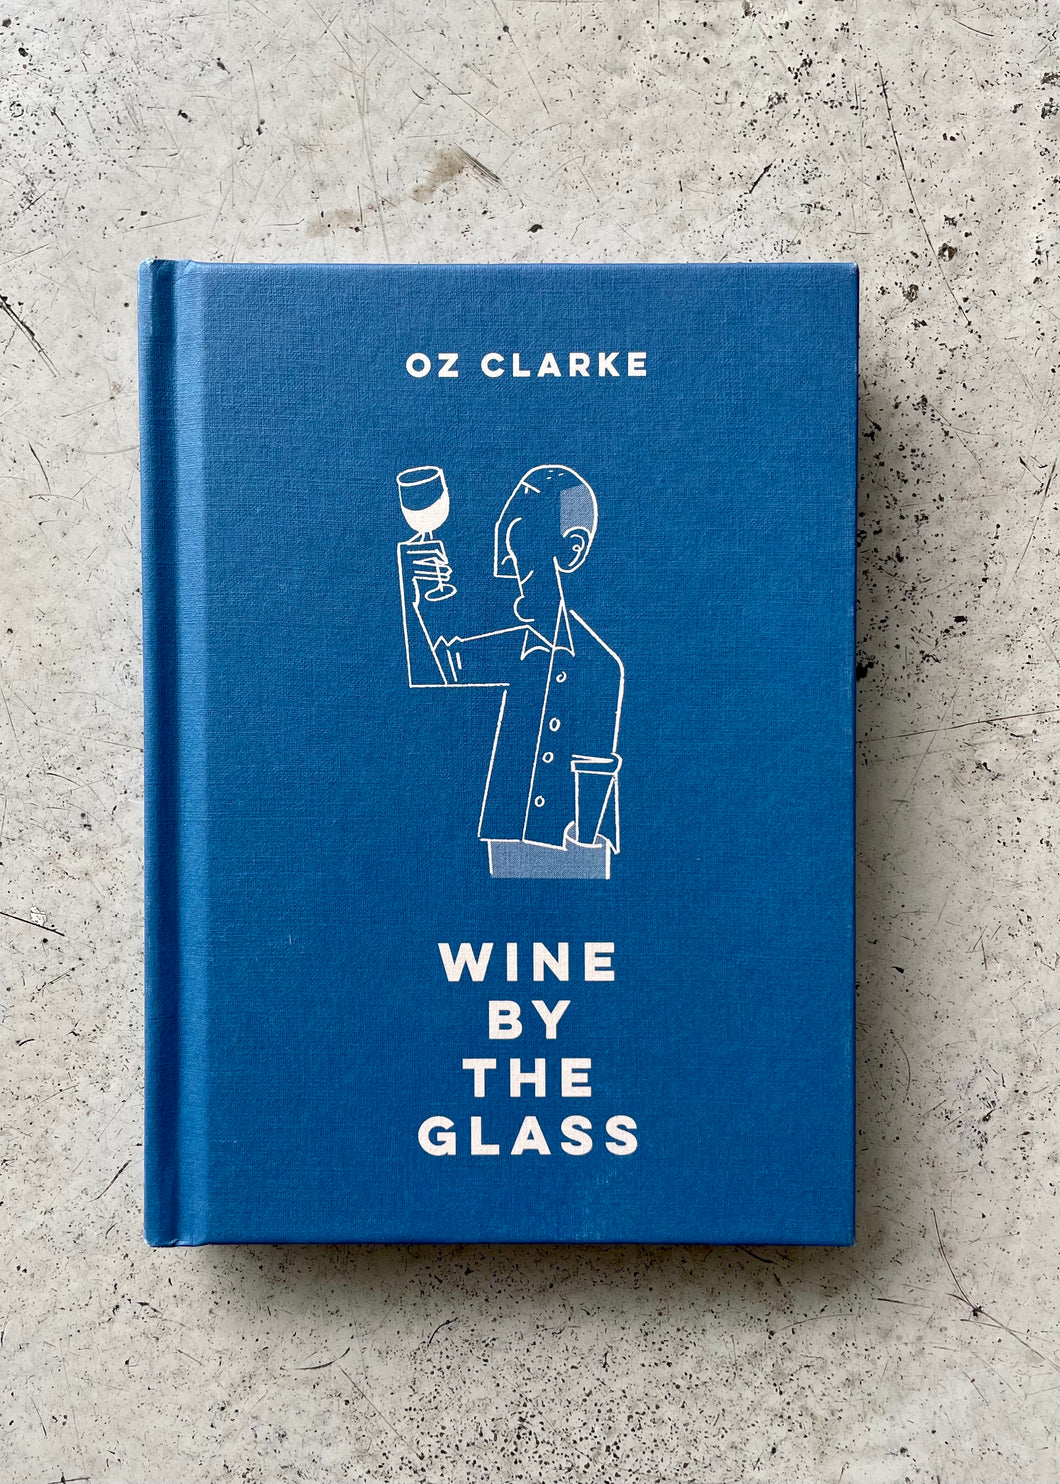 Oz Clarke 'Wine By the Glass' Book